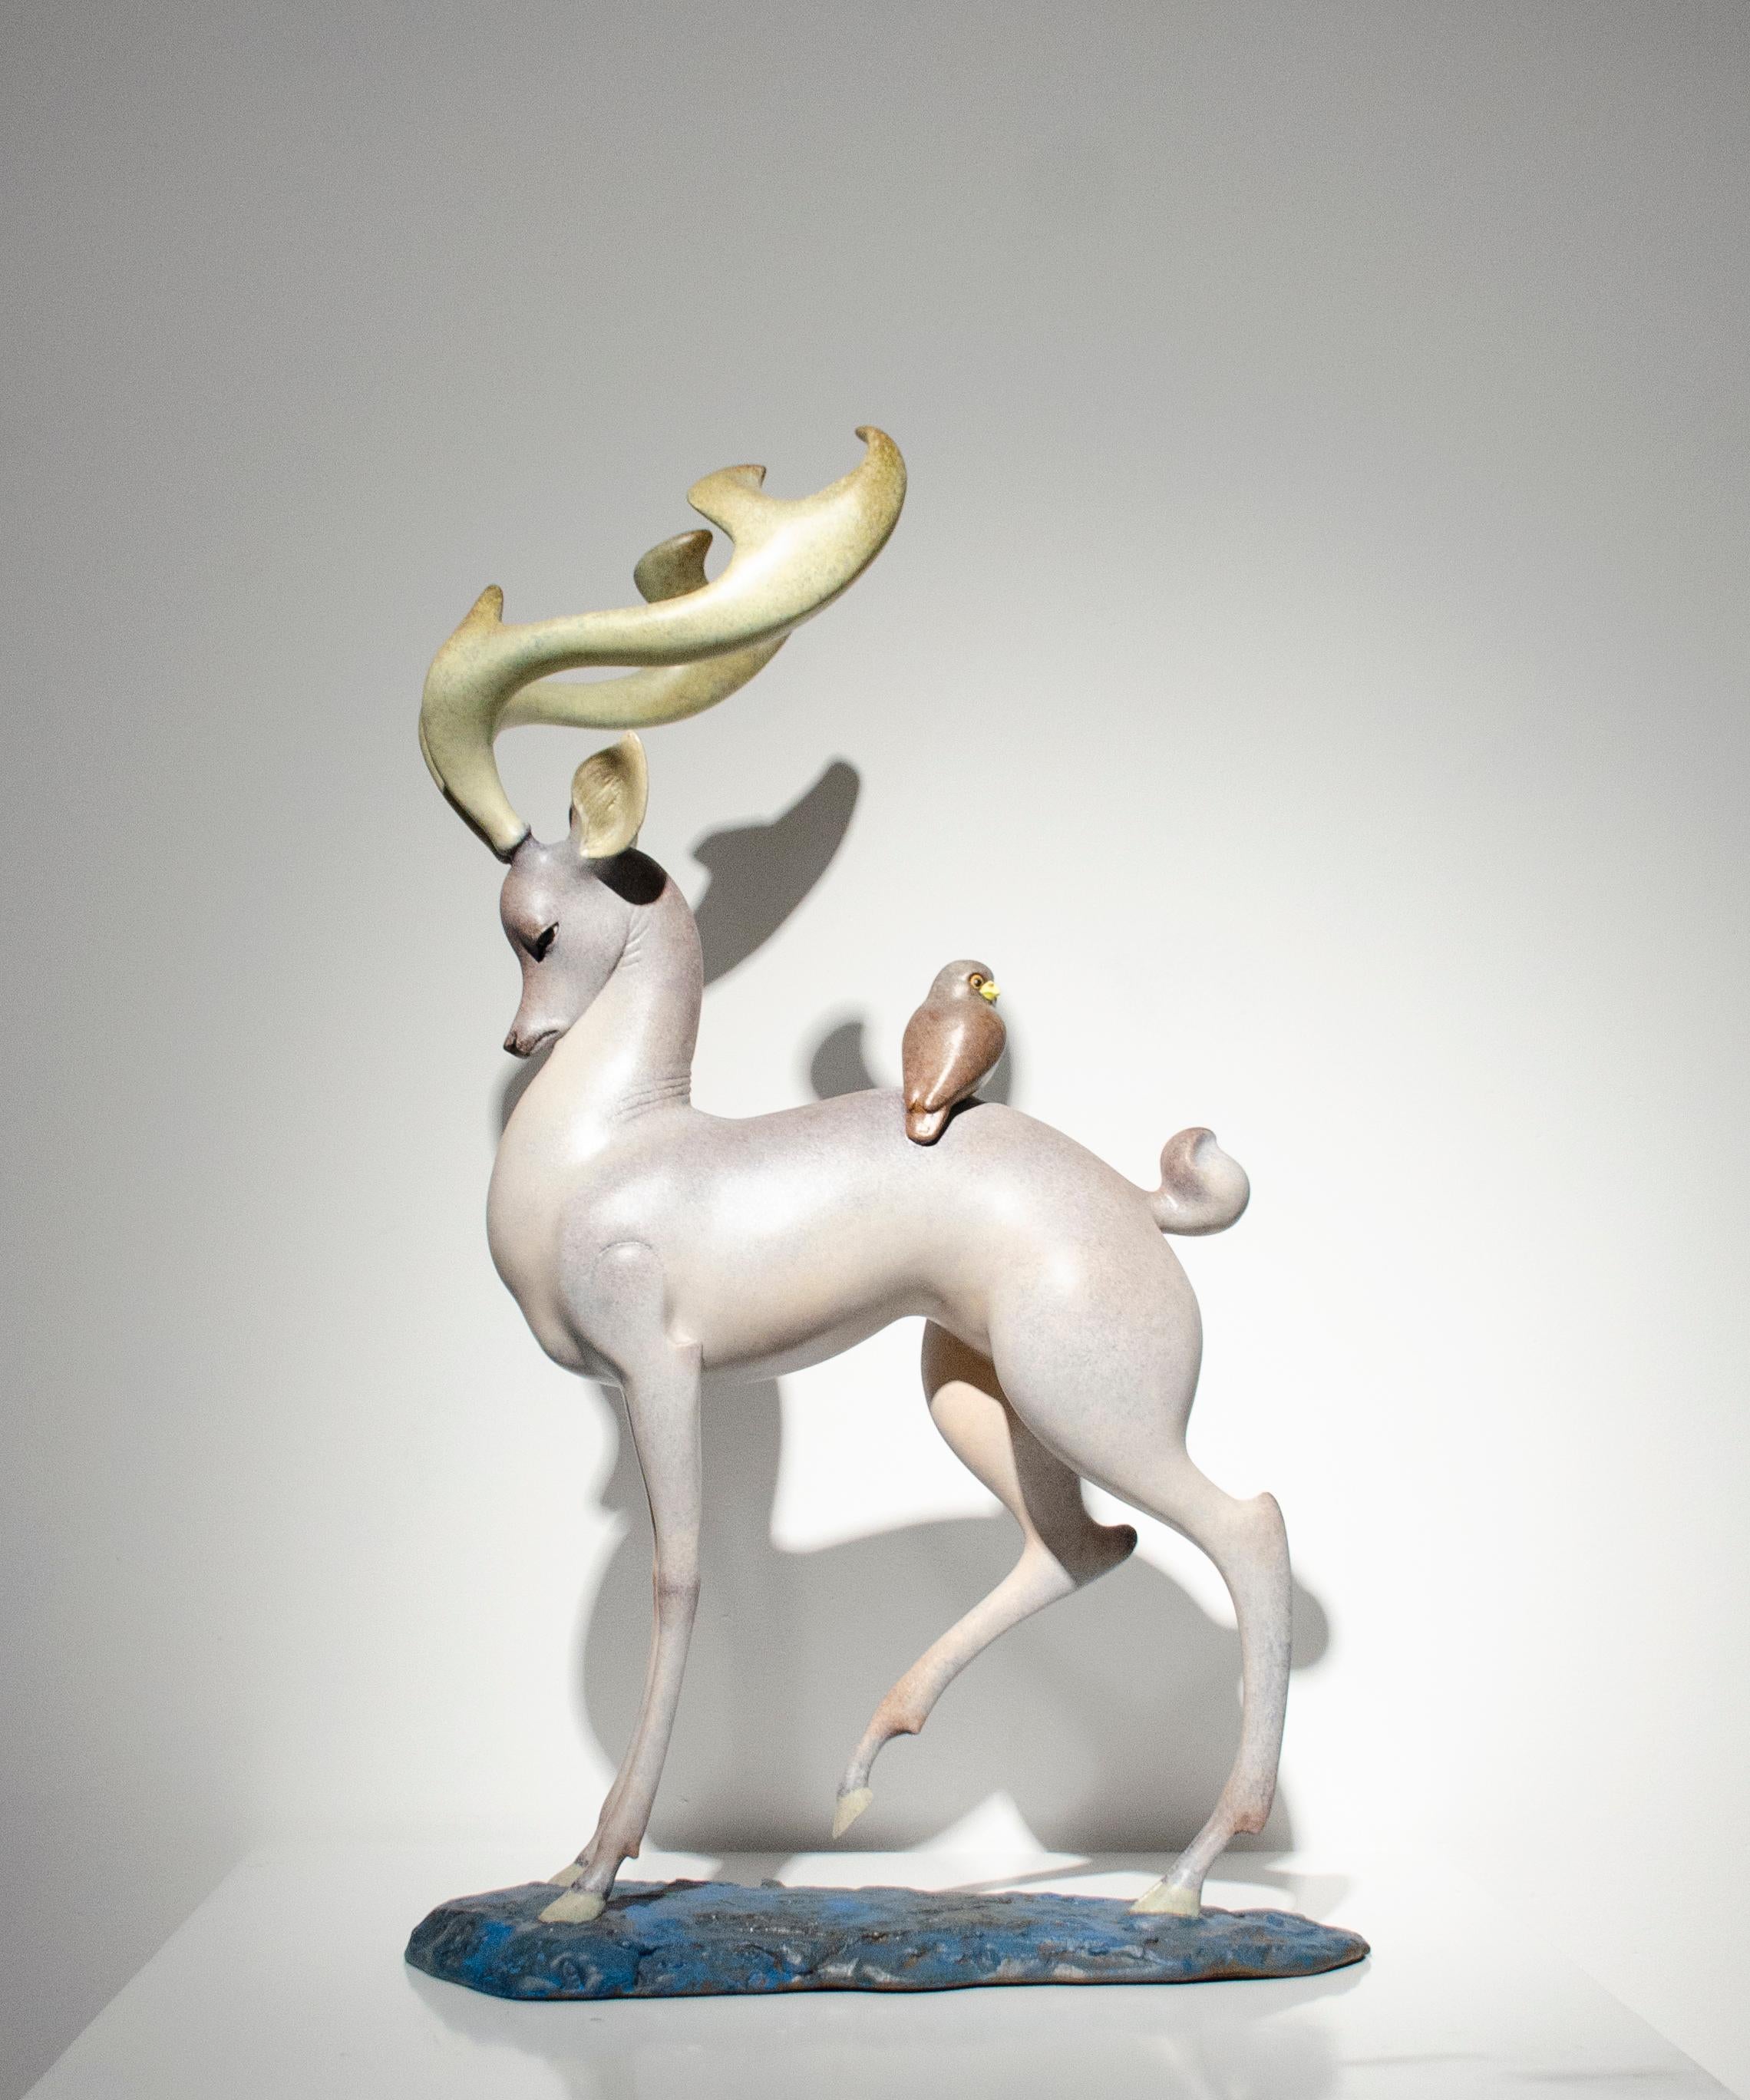 Diese Skulptur von Wang Dapeng ist signiert und nummeriert. Ausgabe 30 / 99. 

Wang Dapeng ist ein zeitgenössischer realistischer Bildhauer. Er fertigt Bilder von spirituellen Tieren an - vor allem von Hirschen, Drachen, Pferden und Tigern. Indem er